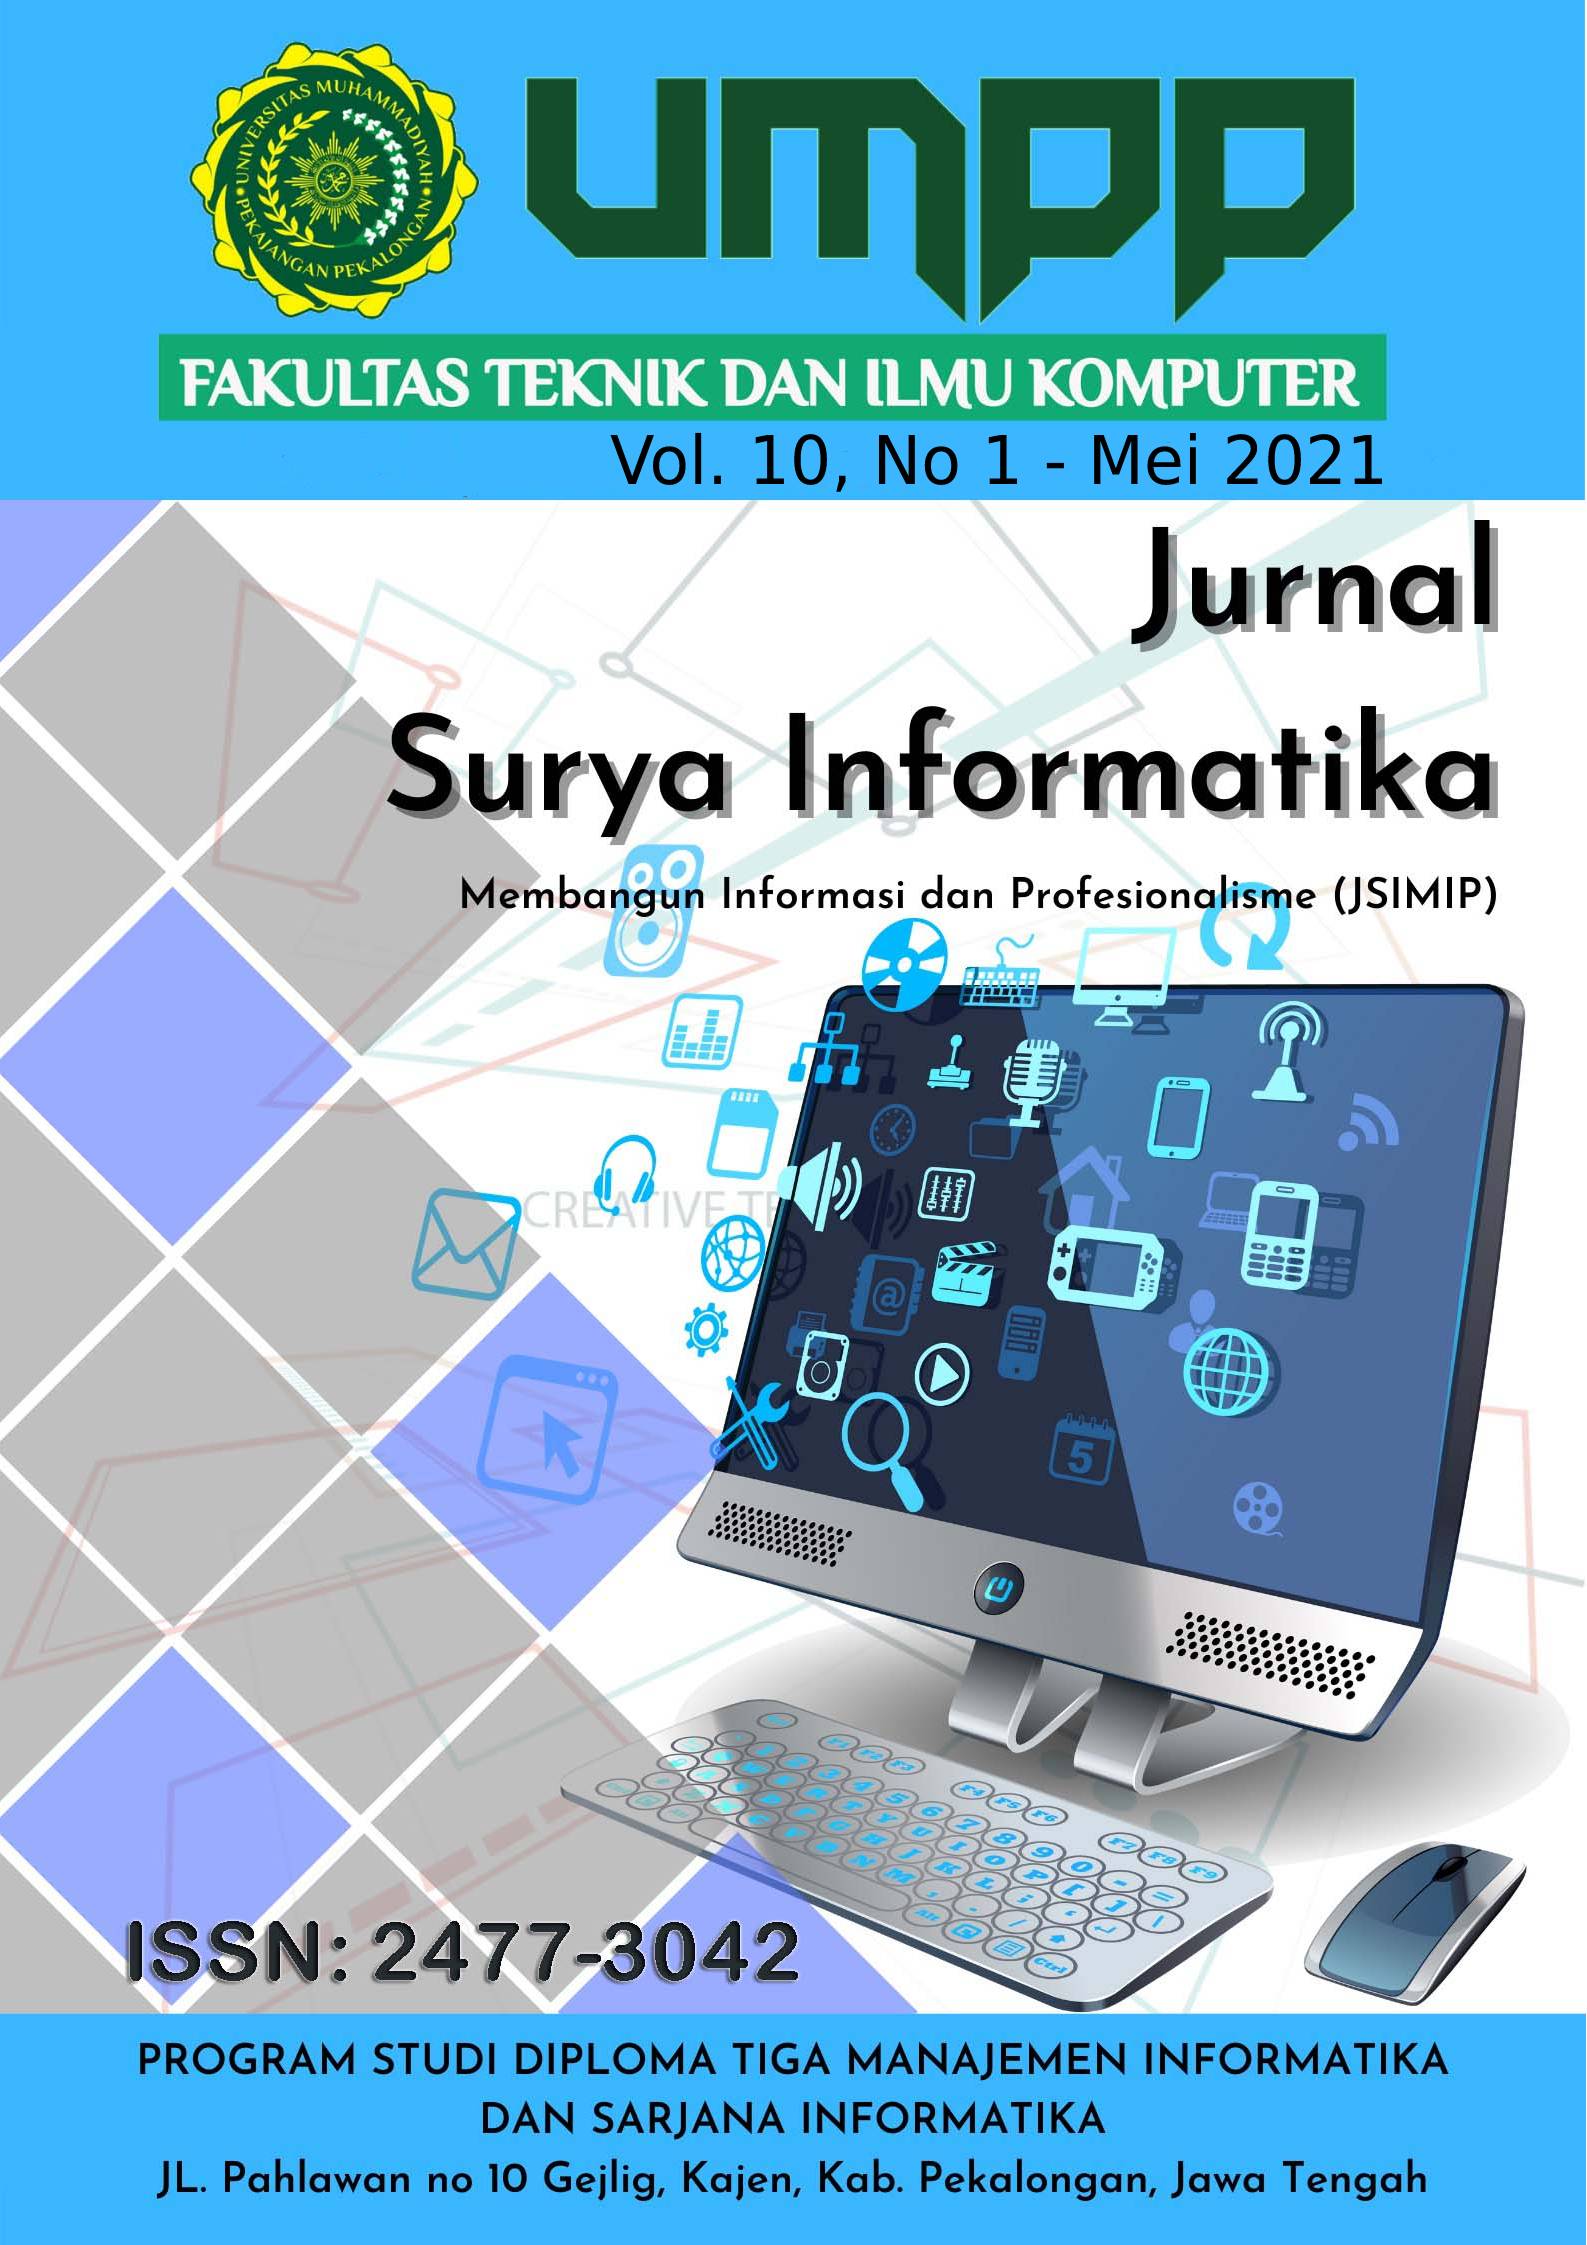 					View Vol. 10 No. 1 (2021): Surya Informatika, Vol. 10 , No.1 Mei 2021
				